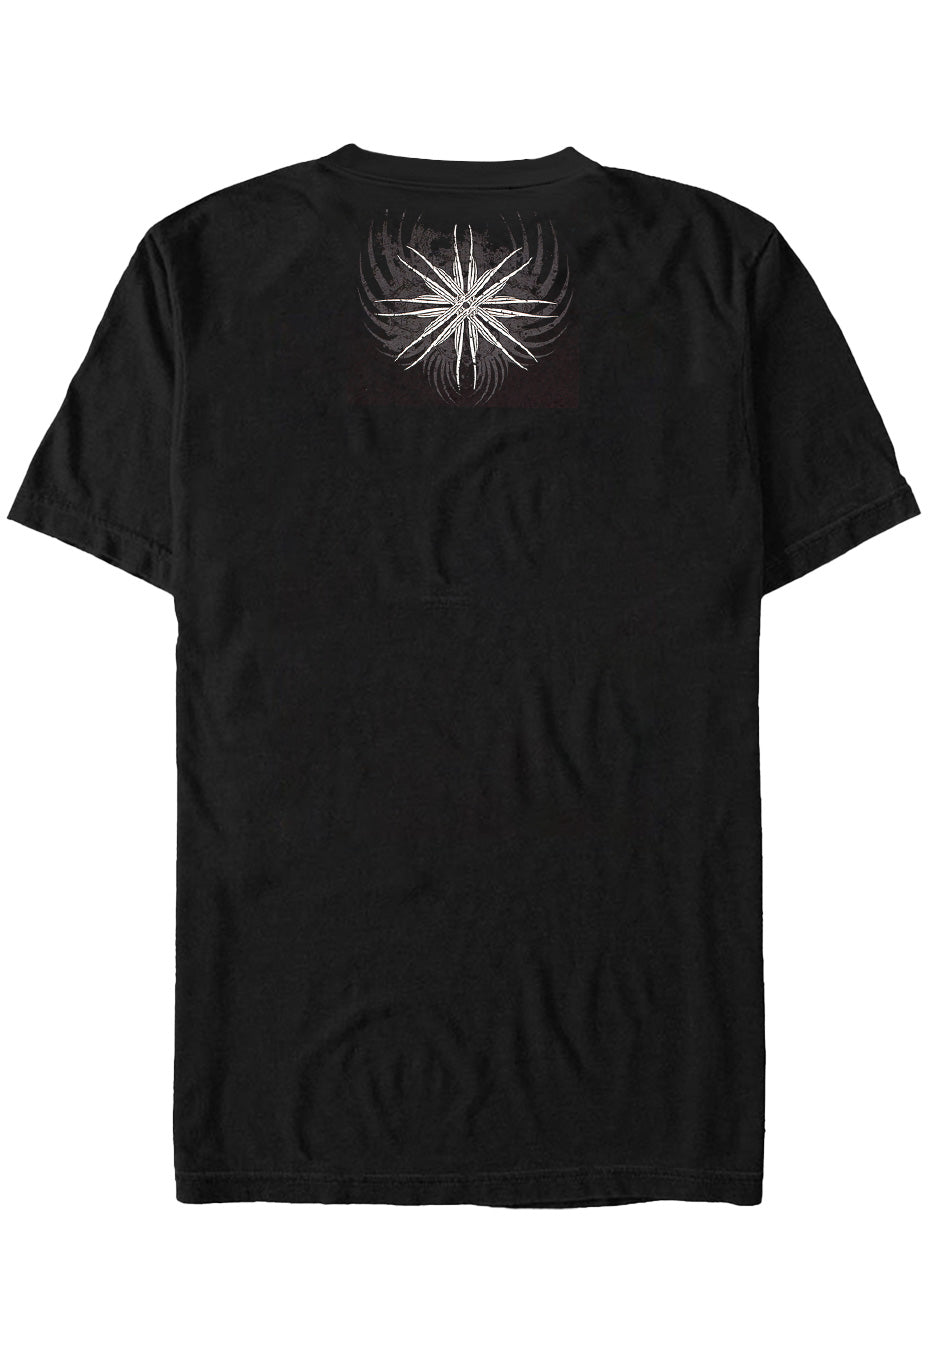 Avantasia - Supreme Epic - T-Shirt